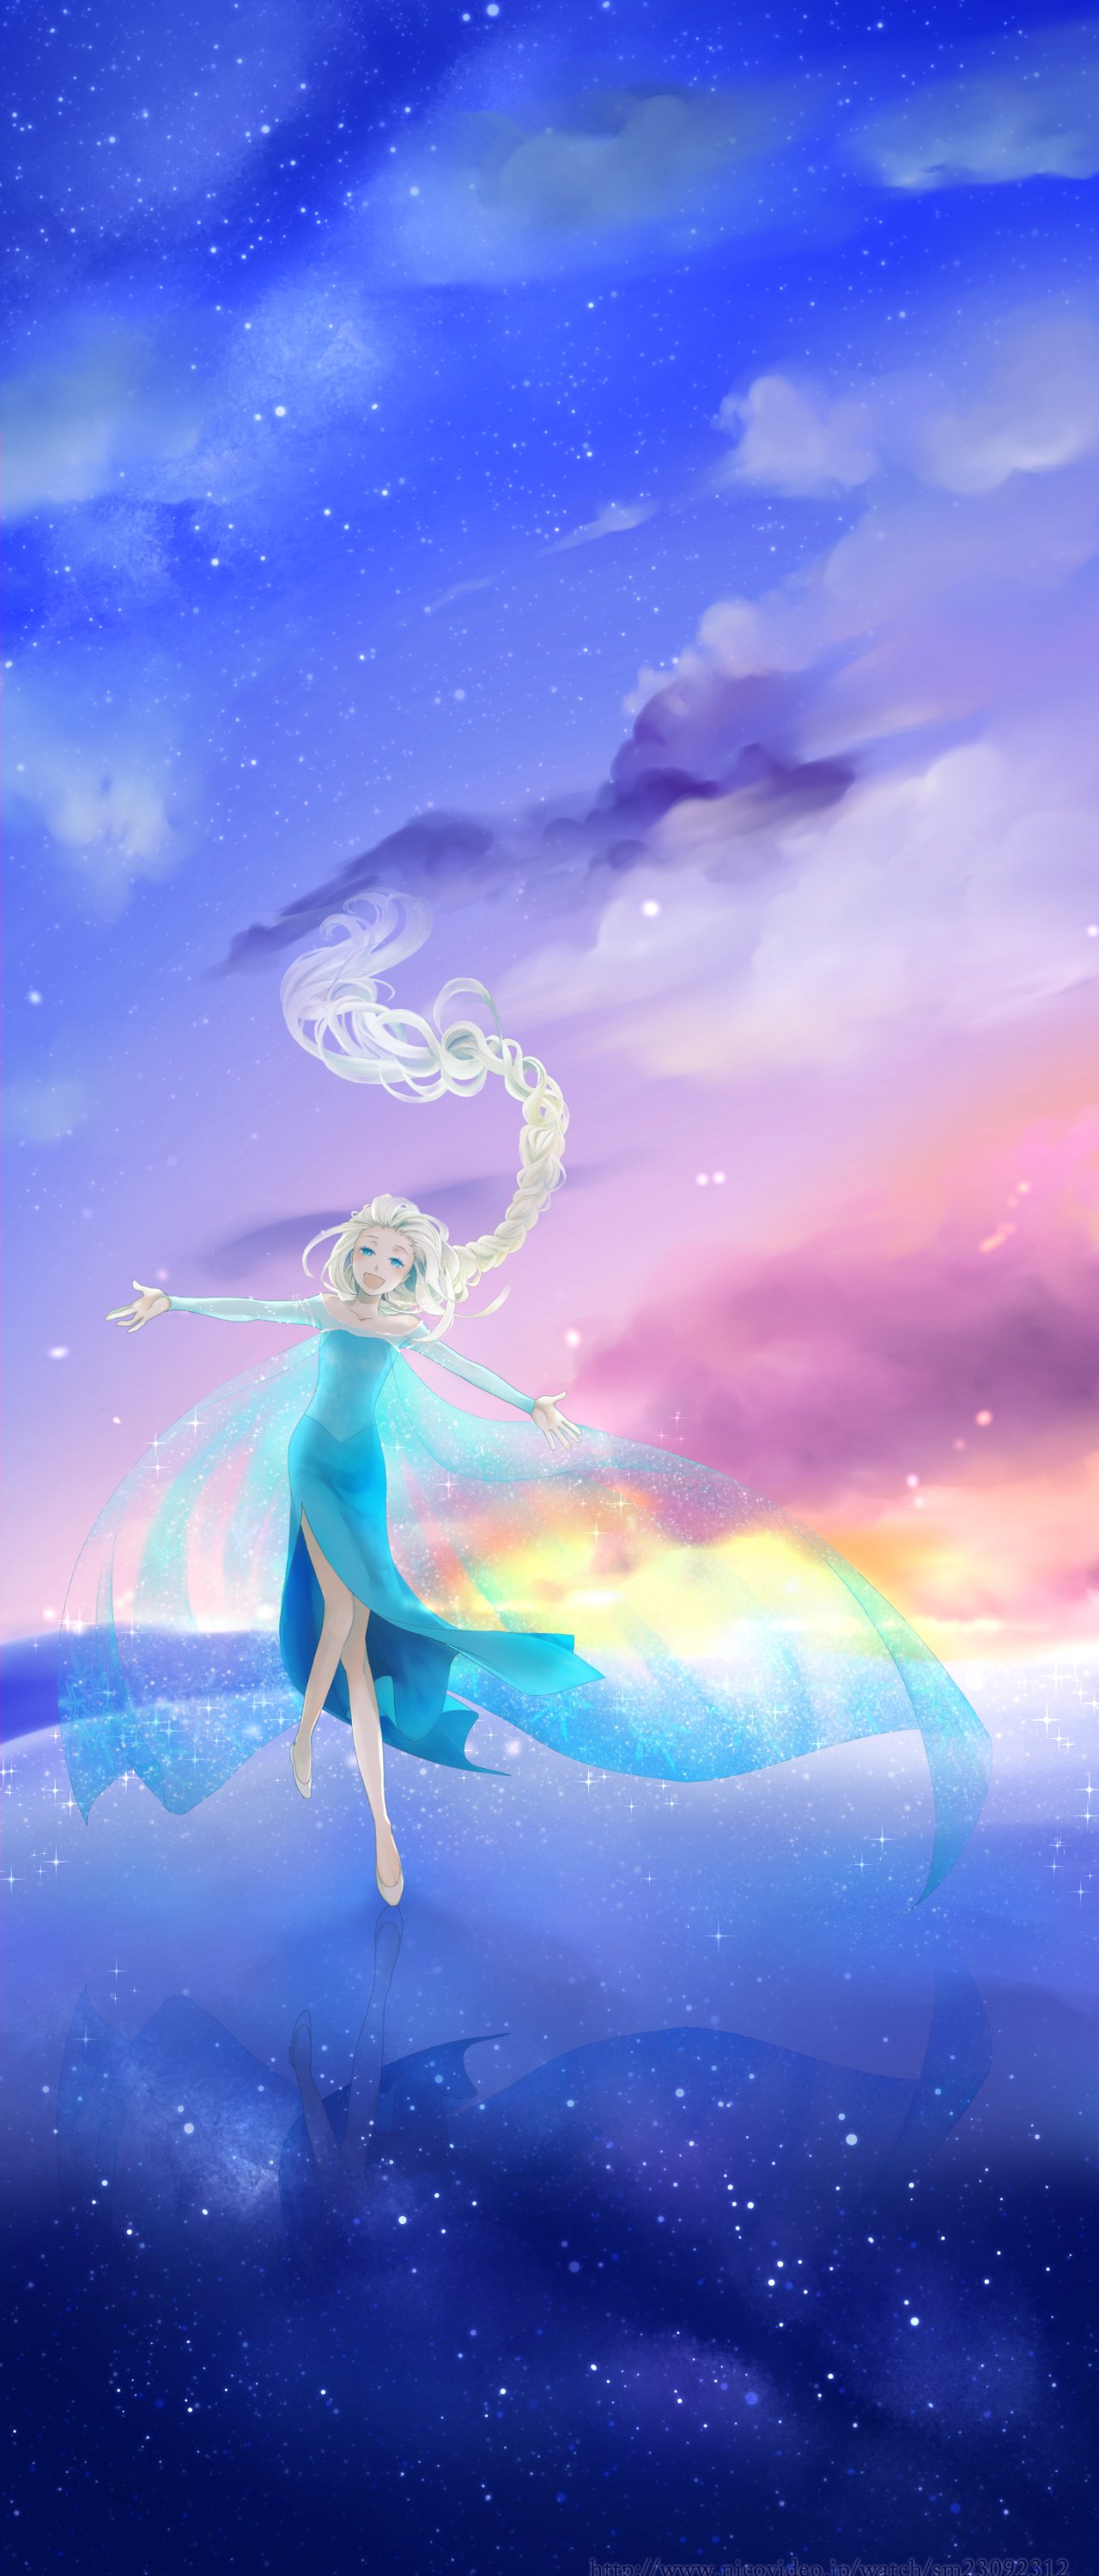 Princess Elsa, Cartoon, Frozen (movie), Fan art Wallpaper